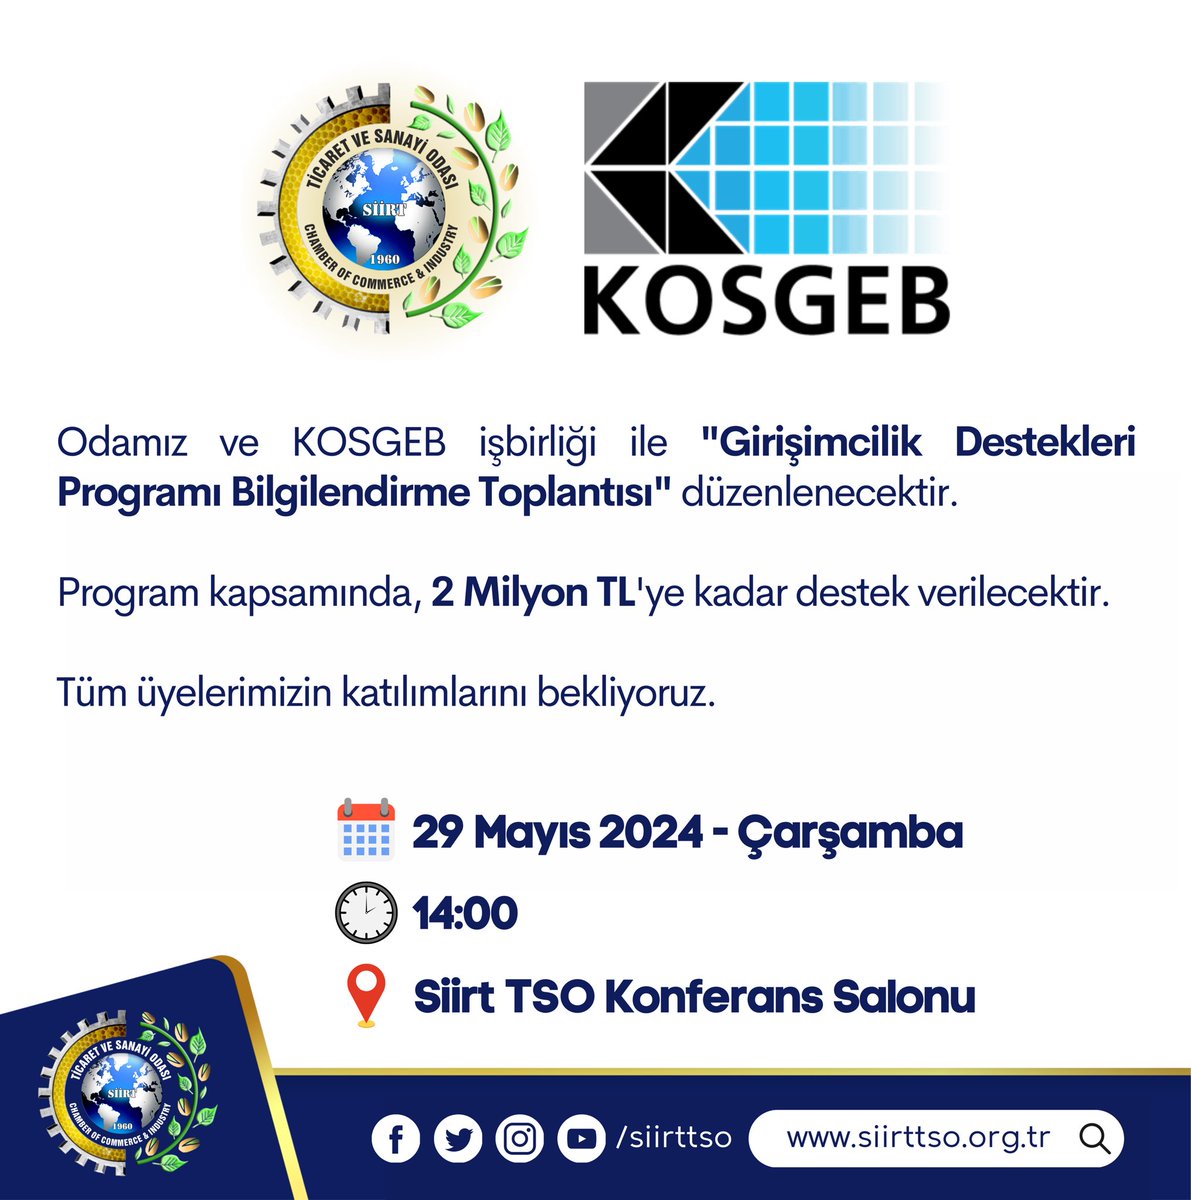 #DUYURU Odamız ve KOSGEB işbirliği ile 'Girişimcilik Destekleri Programı Bilgilendirme Toplantısı' düzenlenecektir. Program kapsamında, 2 Milyon TL'ye kadar destek verilecektir. Tüm üyelerimizin katılımlarını bekliyoruz. Tarih: 29 Mayıs 2024 Çarşamba Saat: 14:00 Yer: Siirt